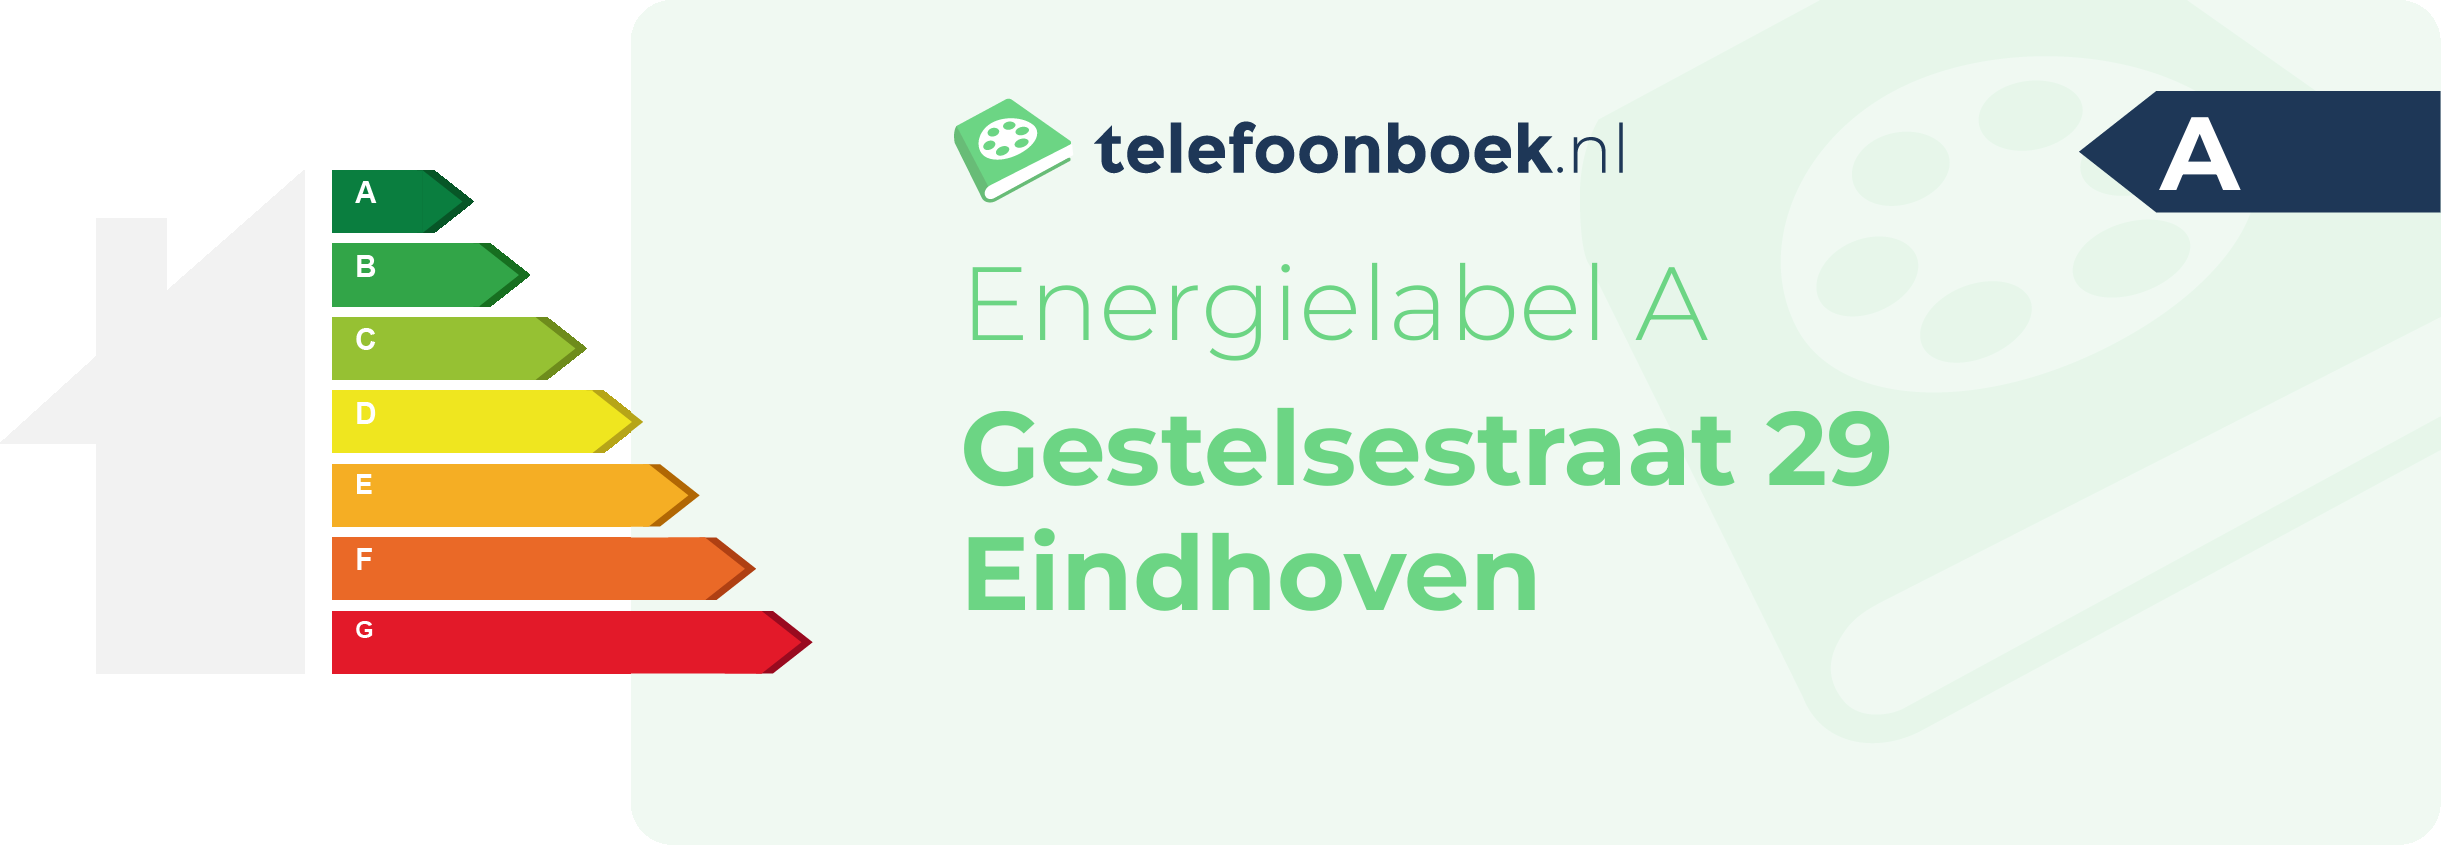 Energielabel Gestelsestraat 29 Eindhoven